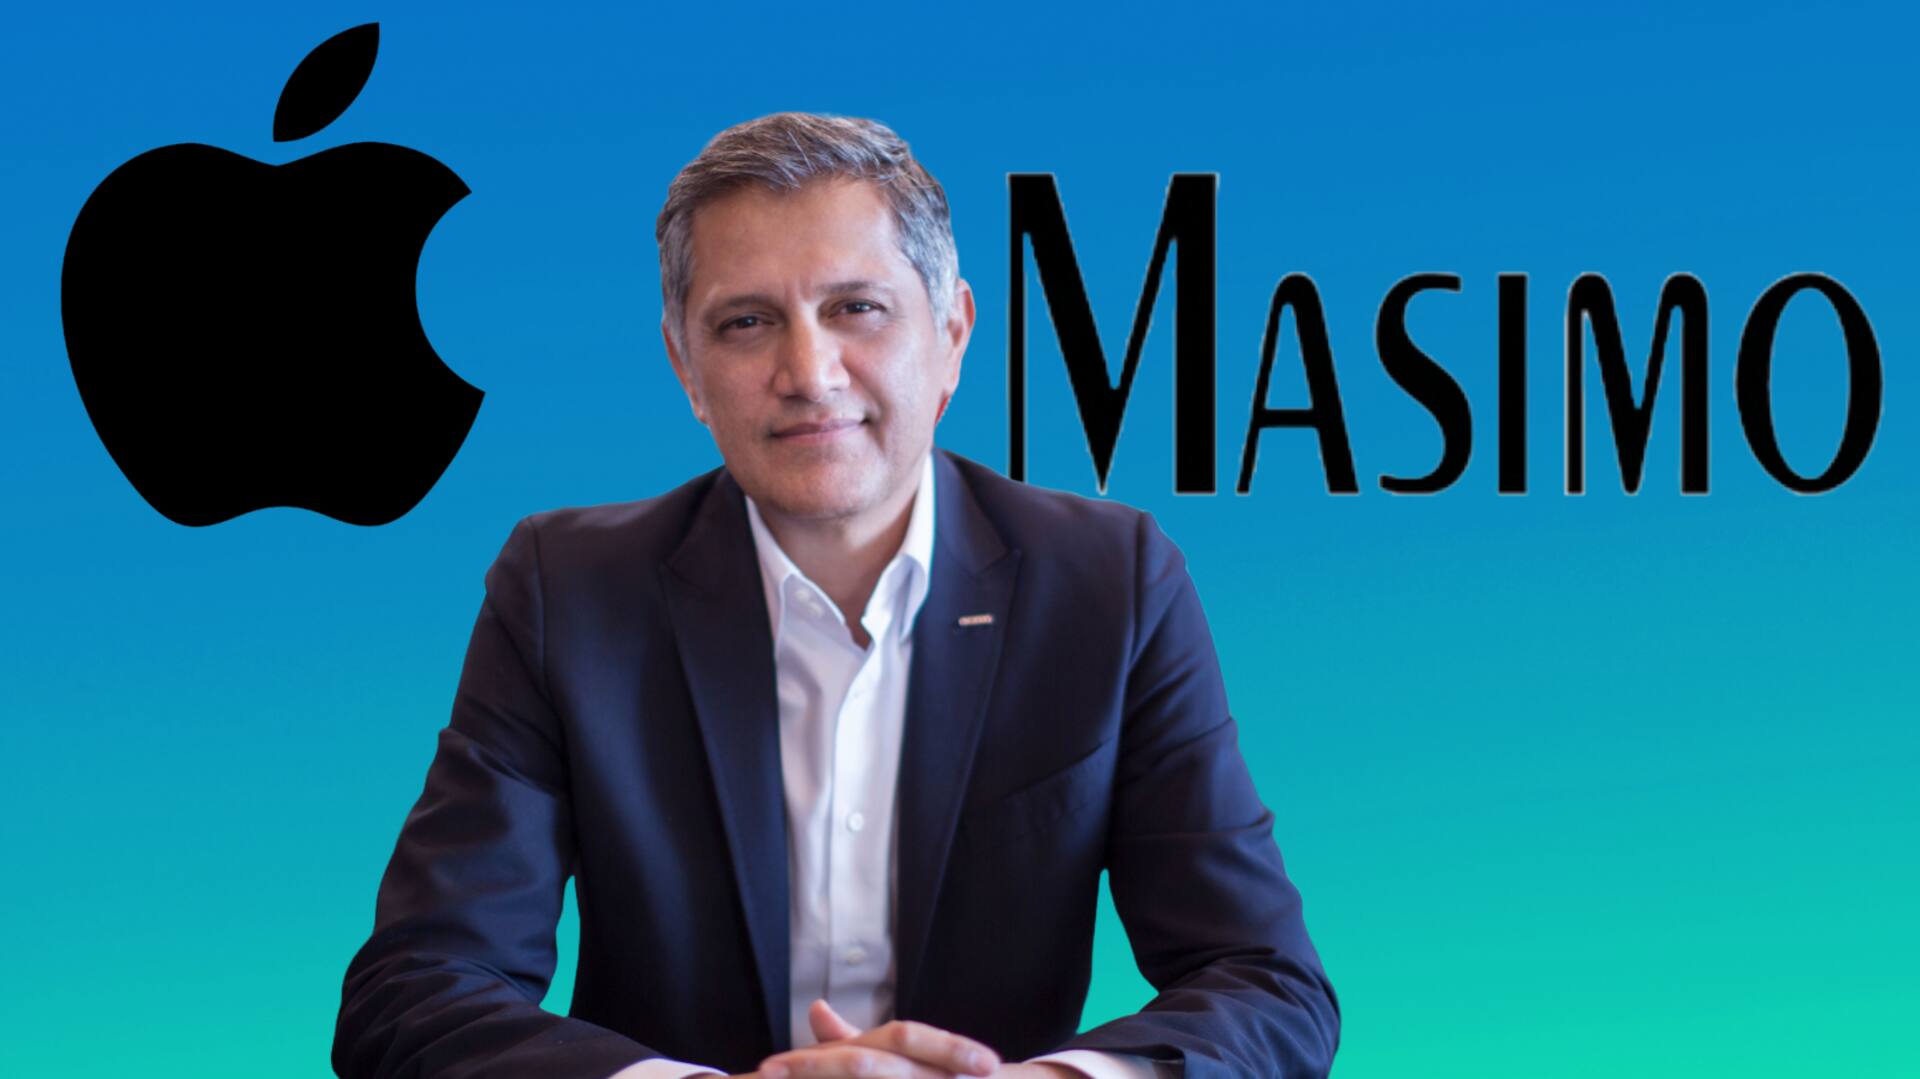 ऐपल के खिलाफ जारी रहेगी मासिमो की कानूनी लड़ाई, CEO ने बताई वजह